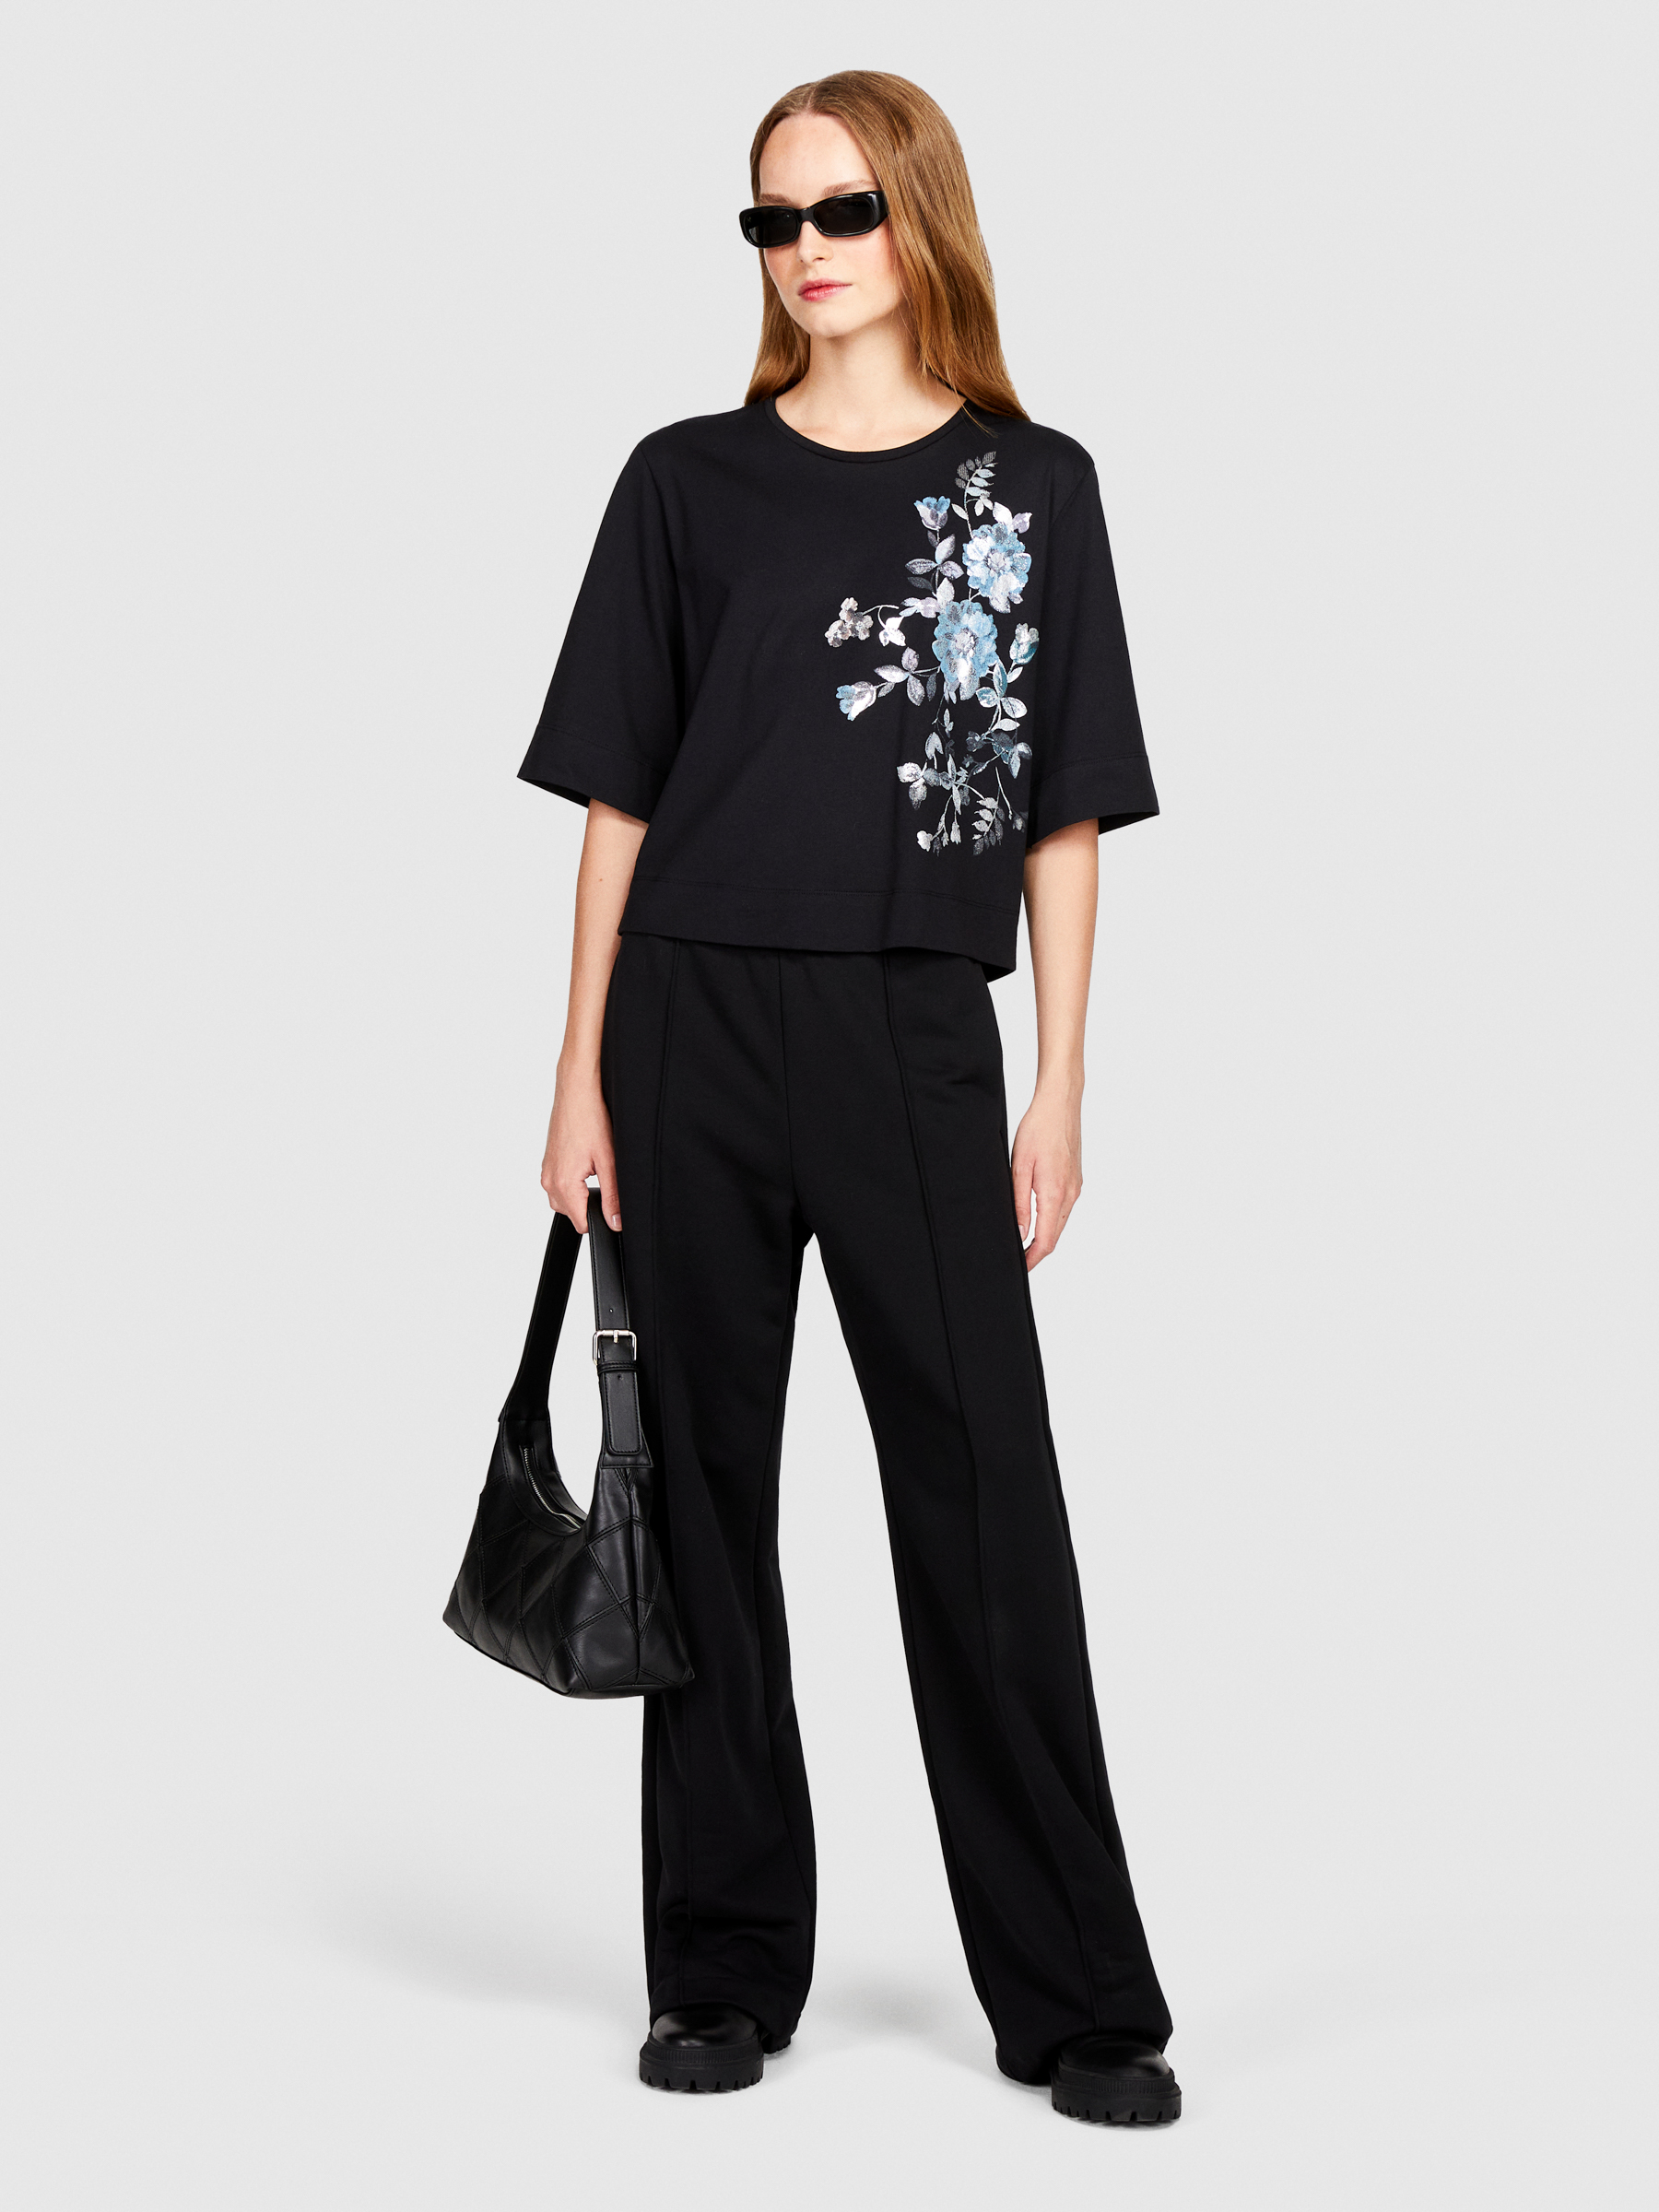 Sisley - Boxy Fit T-shirt With Foil Print, Woman, Black, Size: XS